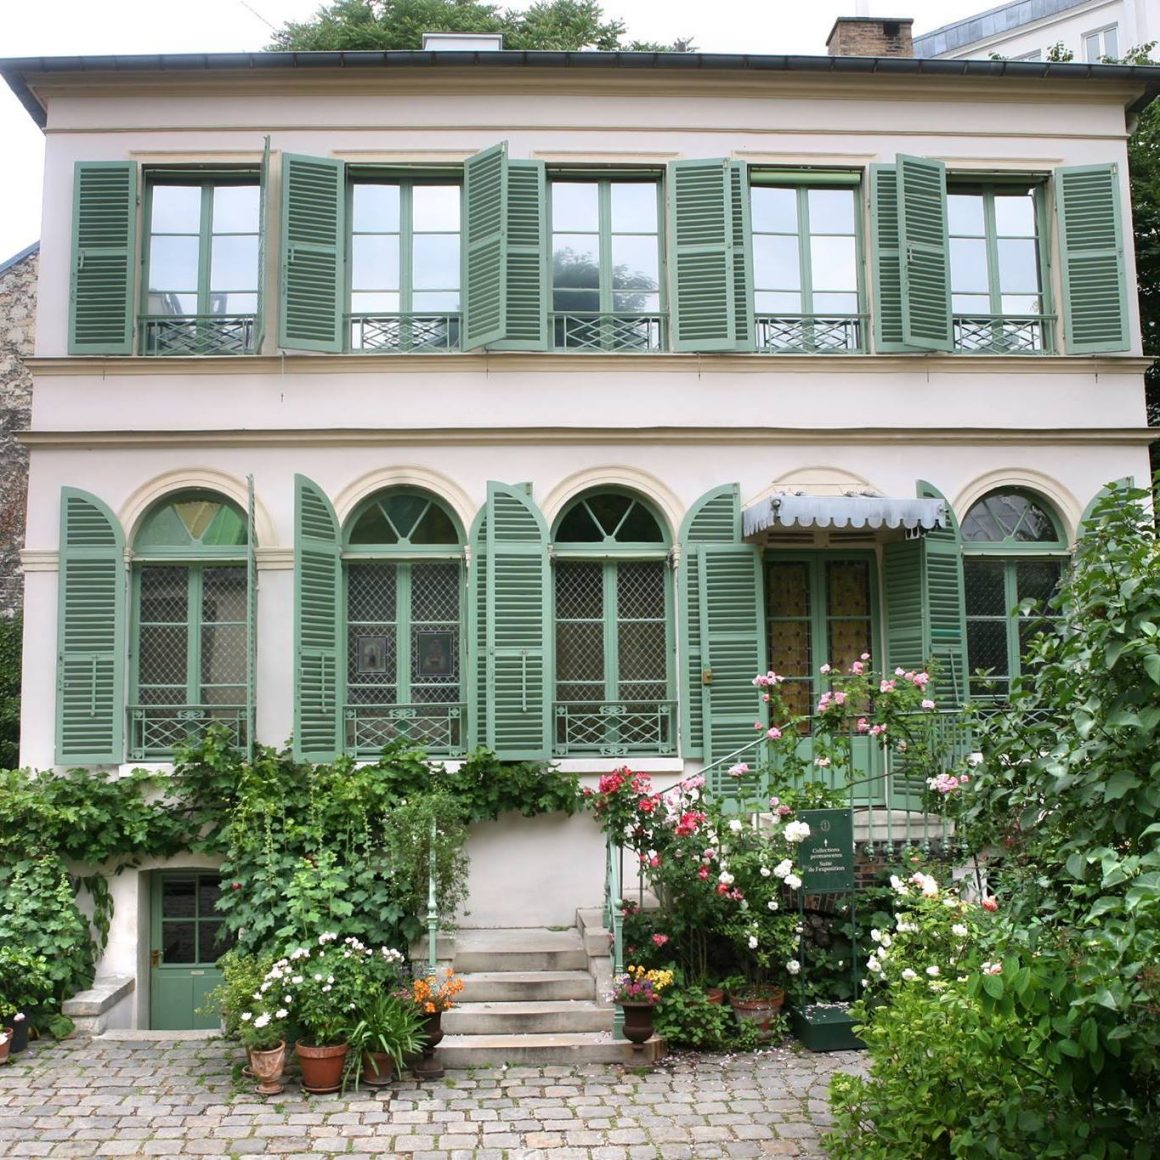 Vila frantuzeasca cu obloane vernil si trandafiri cataratori la baza, cladirea Musée de la Vie Romantique din Paris. Unul din cele mai romantice locuri din Paris.